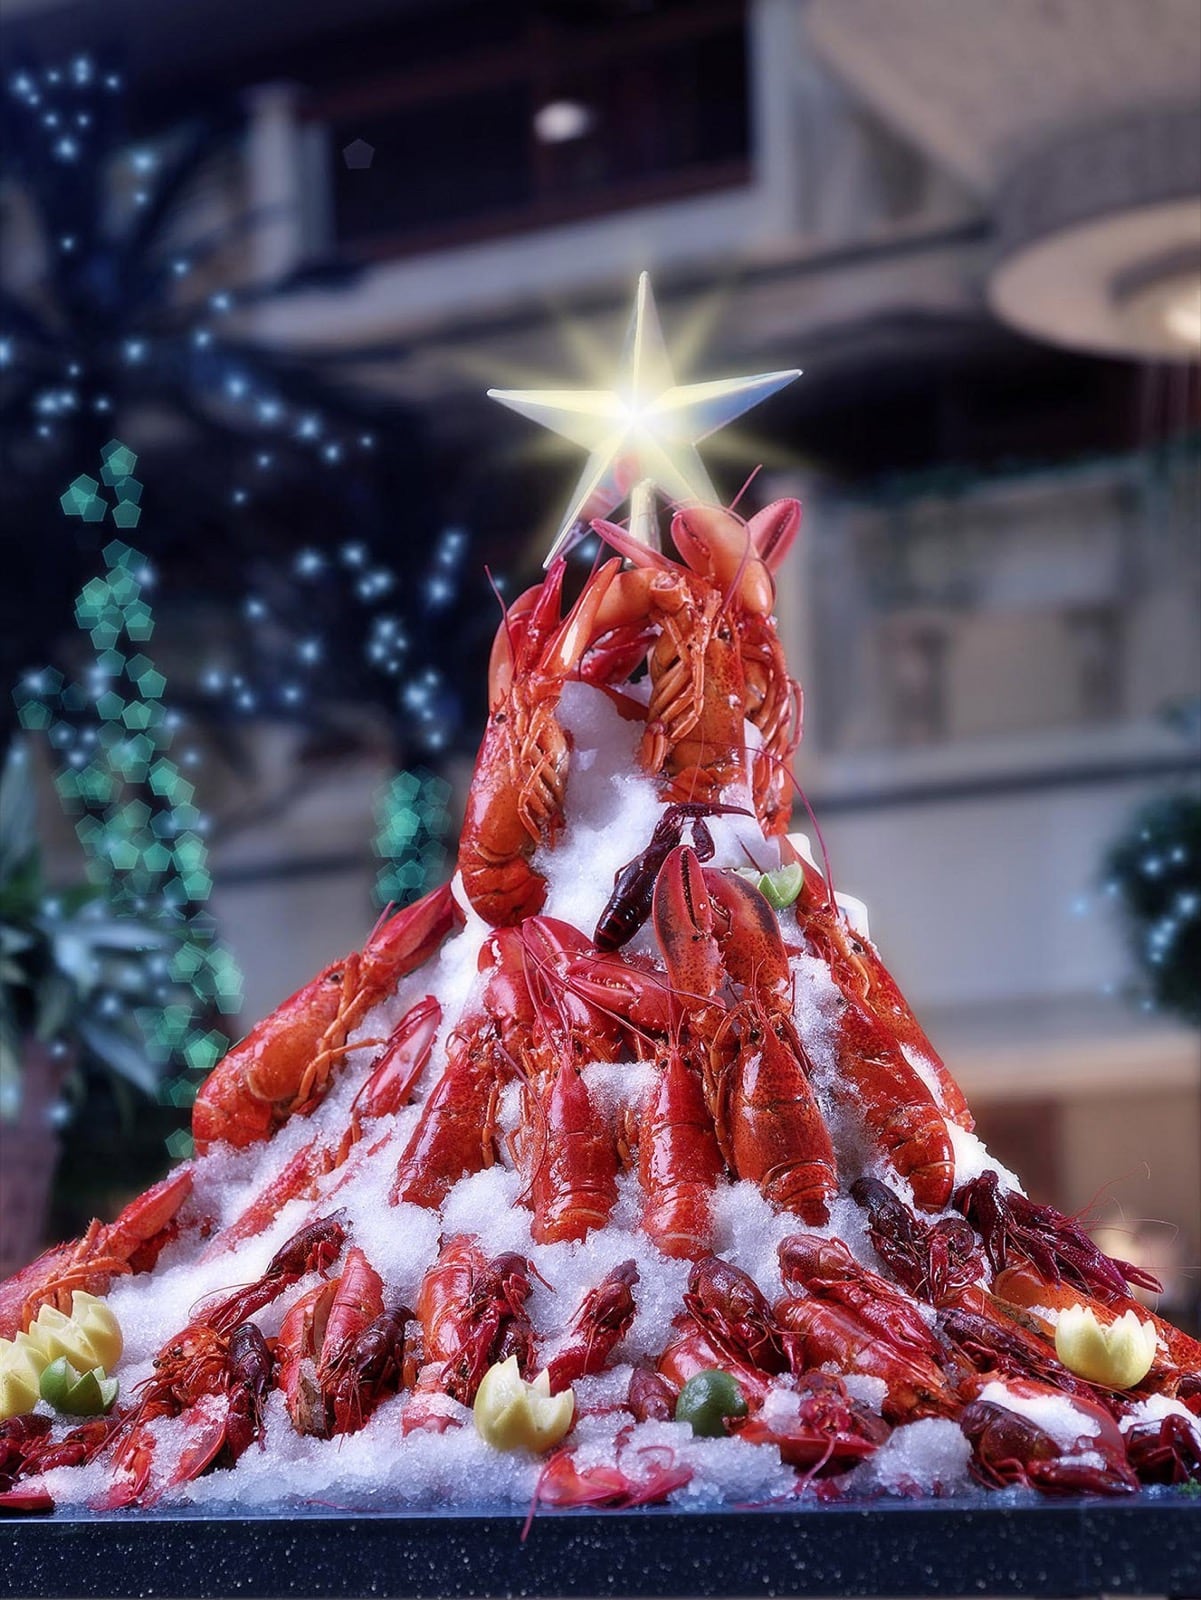 還有更多詳情/圖片帝苑酒店雅苑座 推出閃亮聖誕海鮮自助晚餐 2018，包幫到你搵到最正嘅優惠呀！